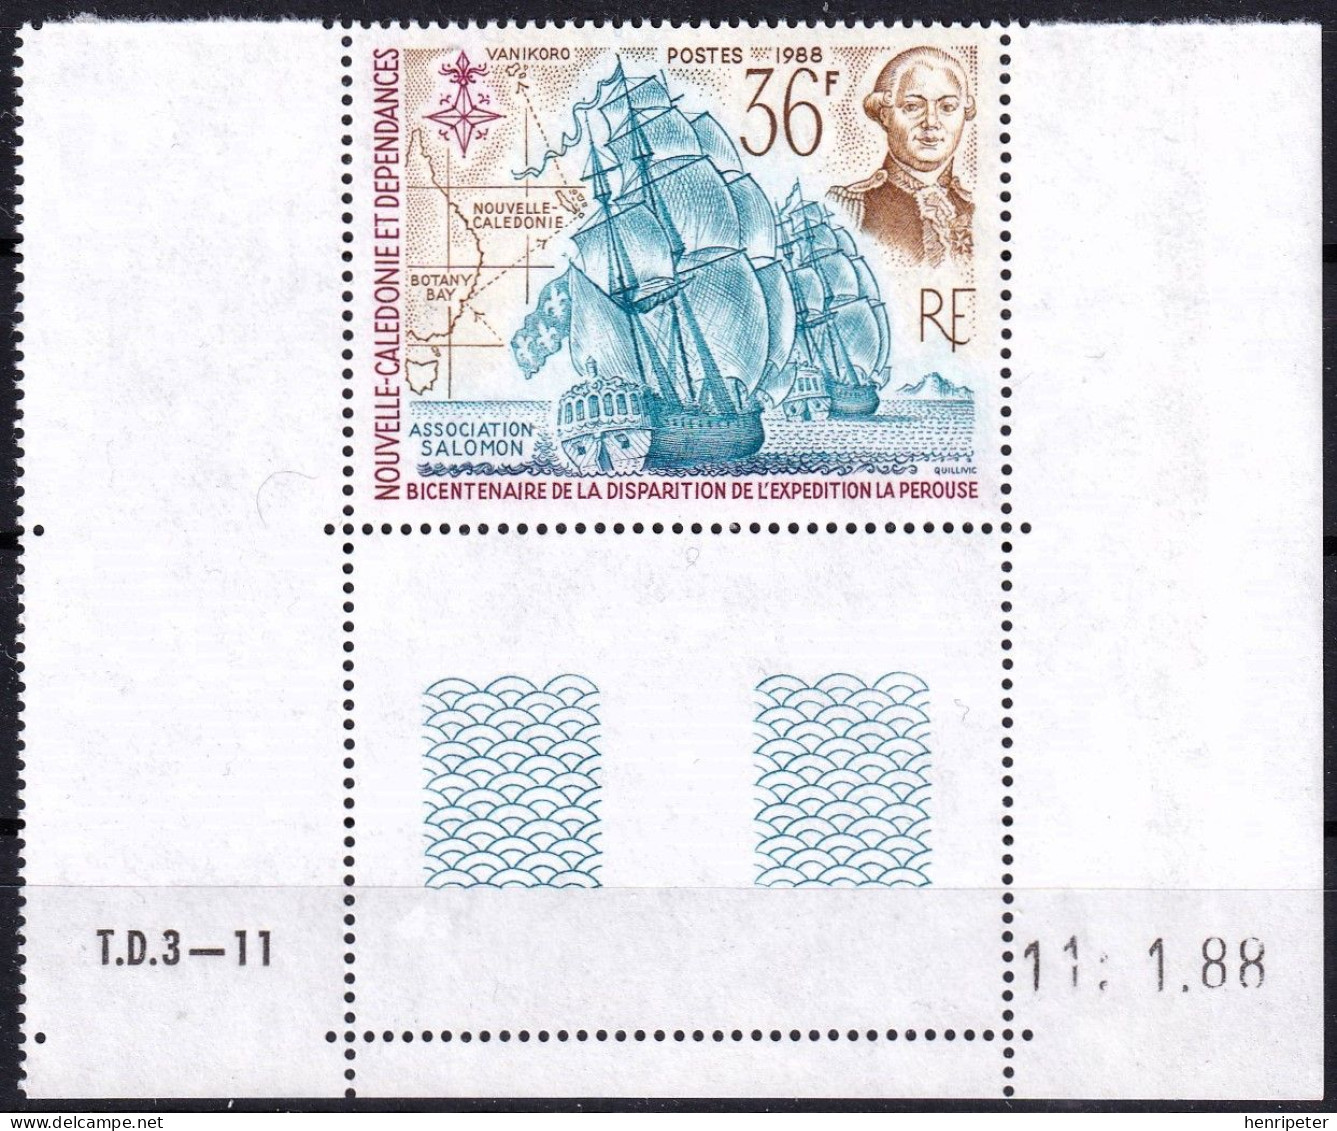 Coin Daté Du 11.1.88 - Bicentenaire De La Disparition De L'expédition La Pérouse - 549 (Yvert) - Nouvelle-Calédonie 1988 - Neufs